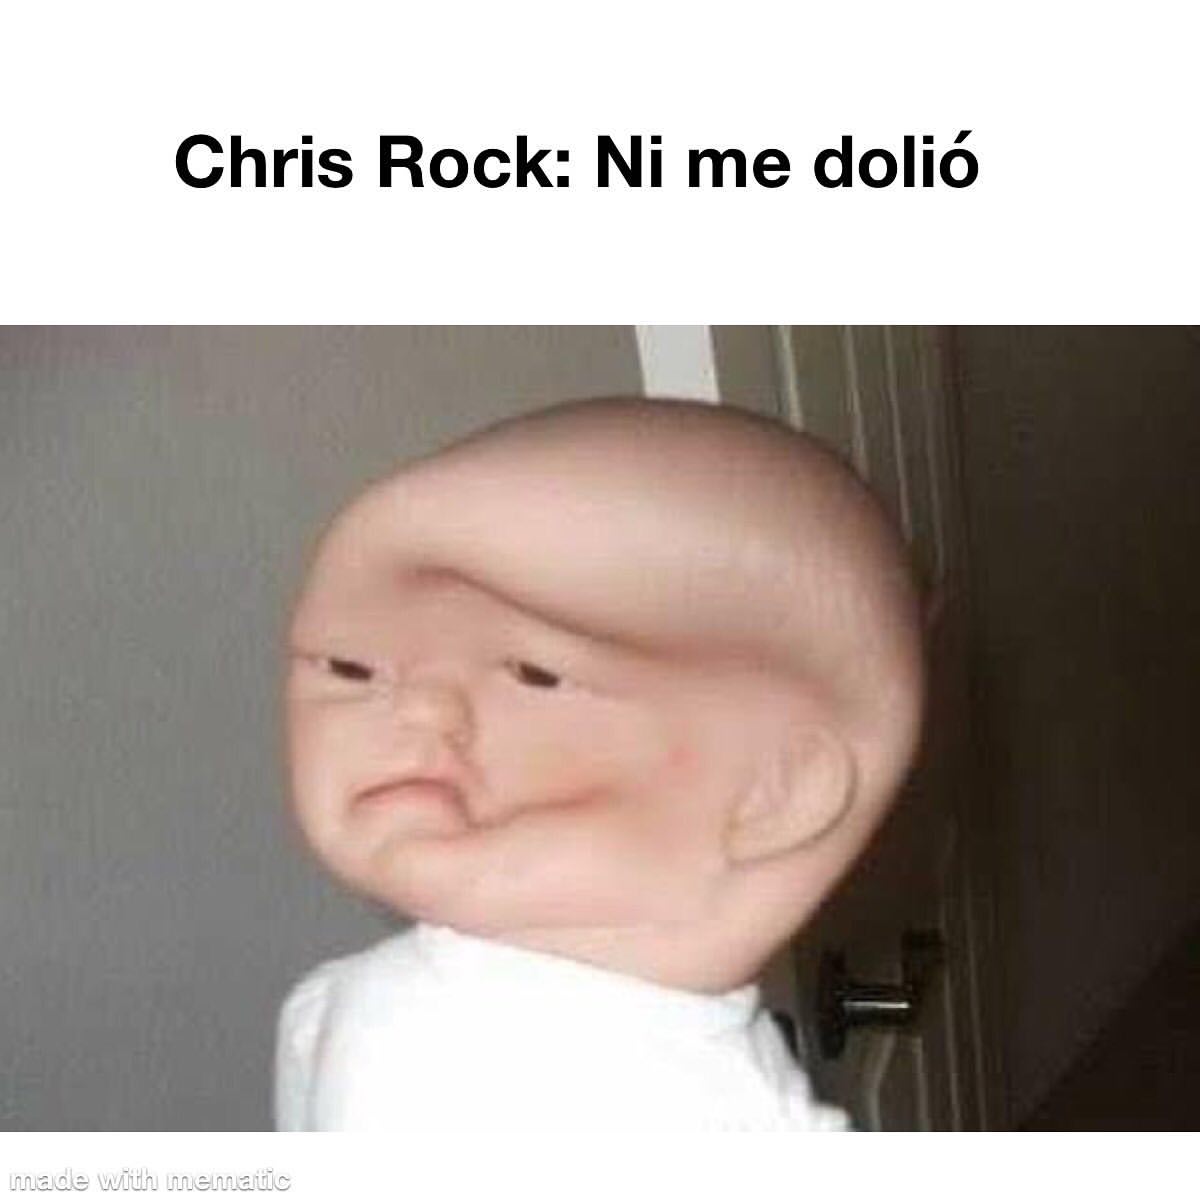 Chris Rock: Ni me dolió.